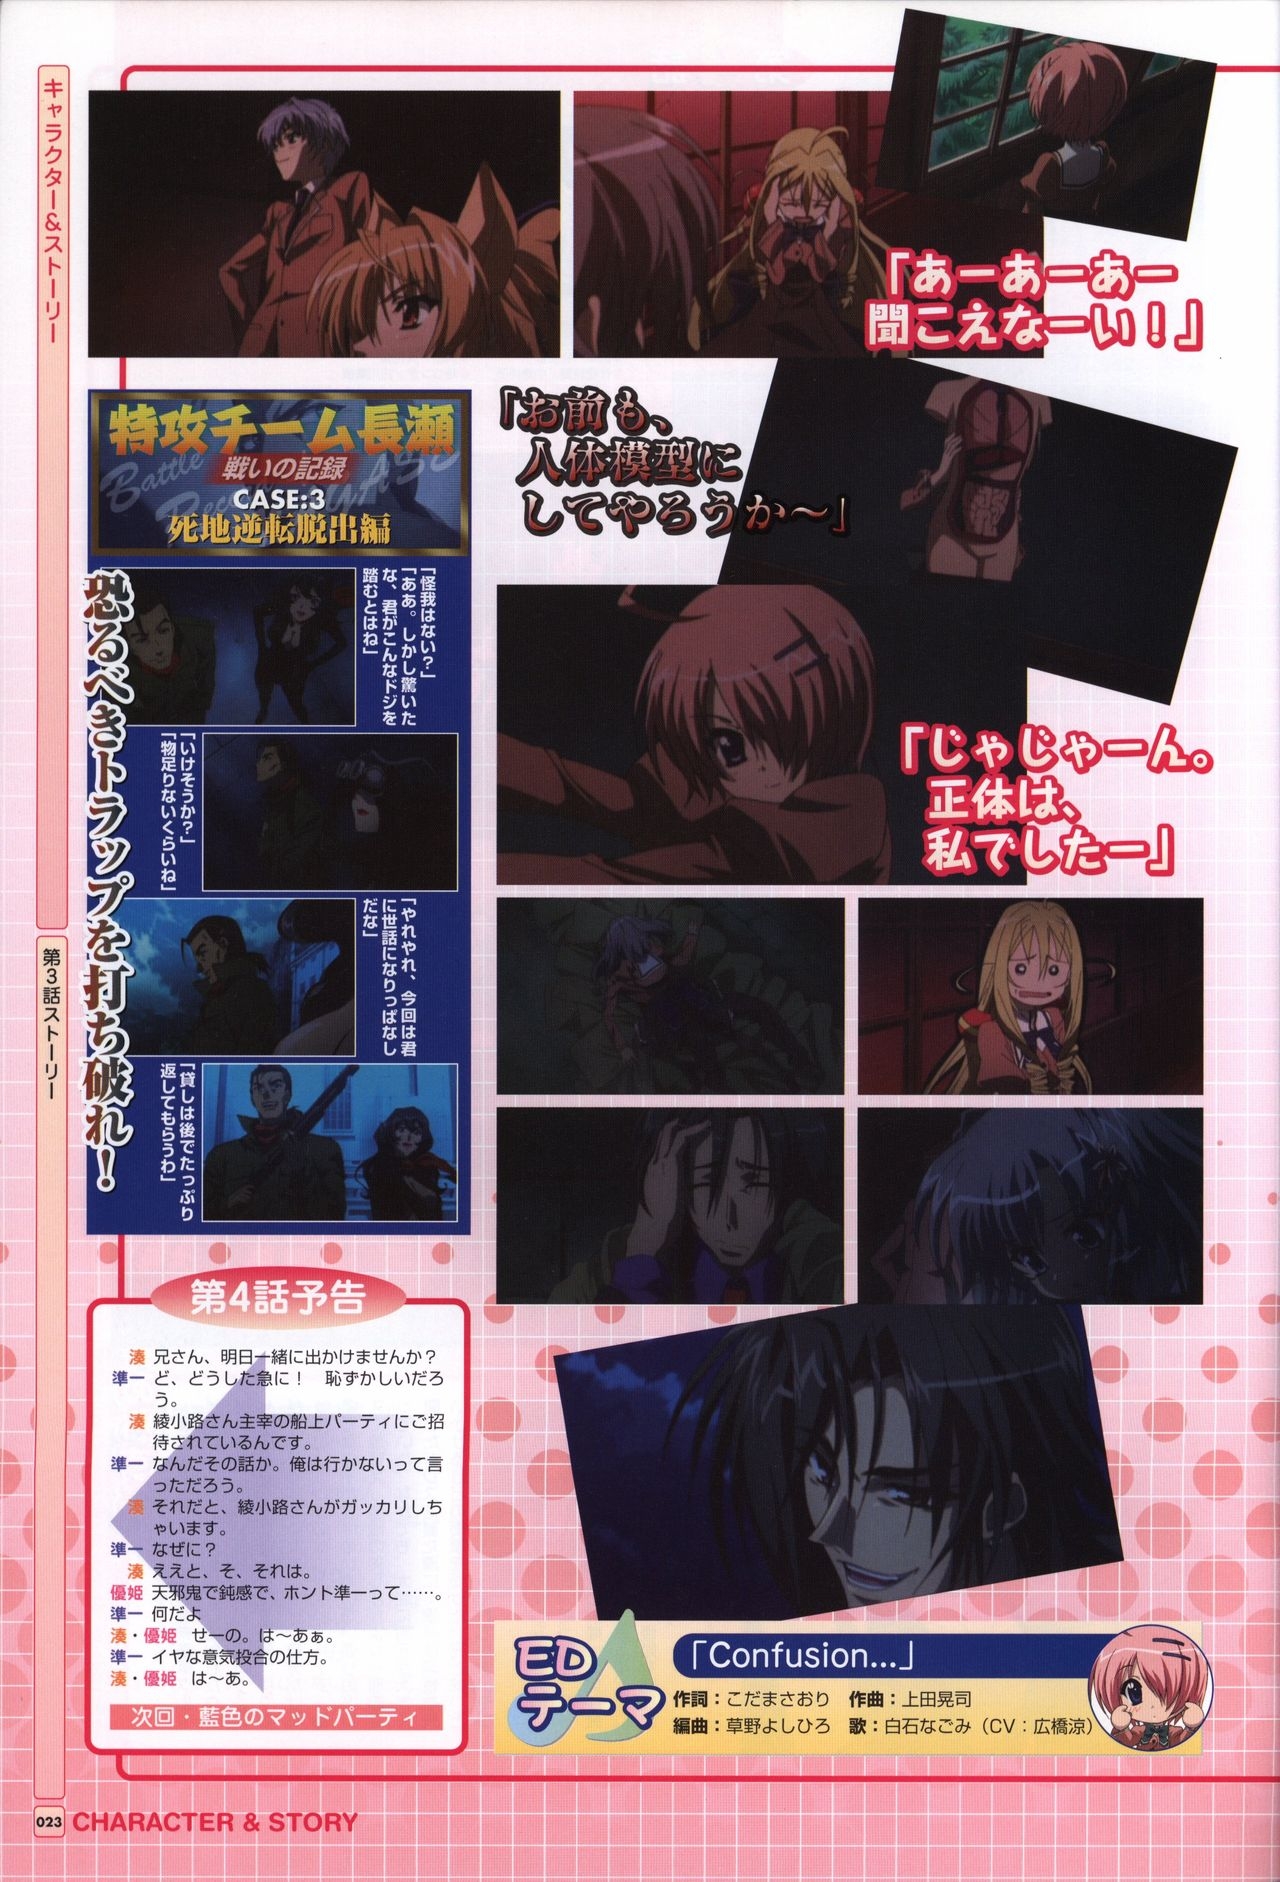 TV ANIME Akaneiro ni Somaru Saka Visual Guide Book 23